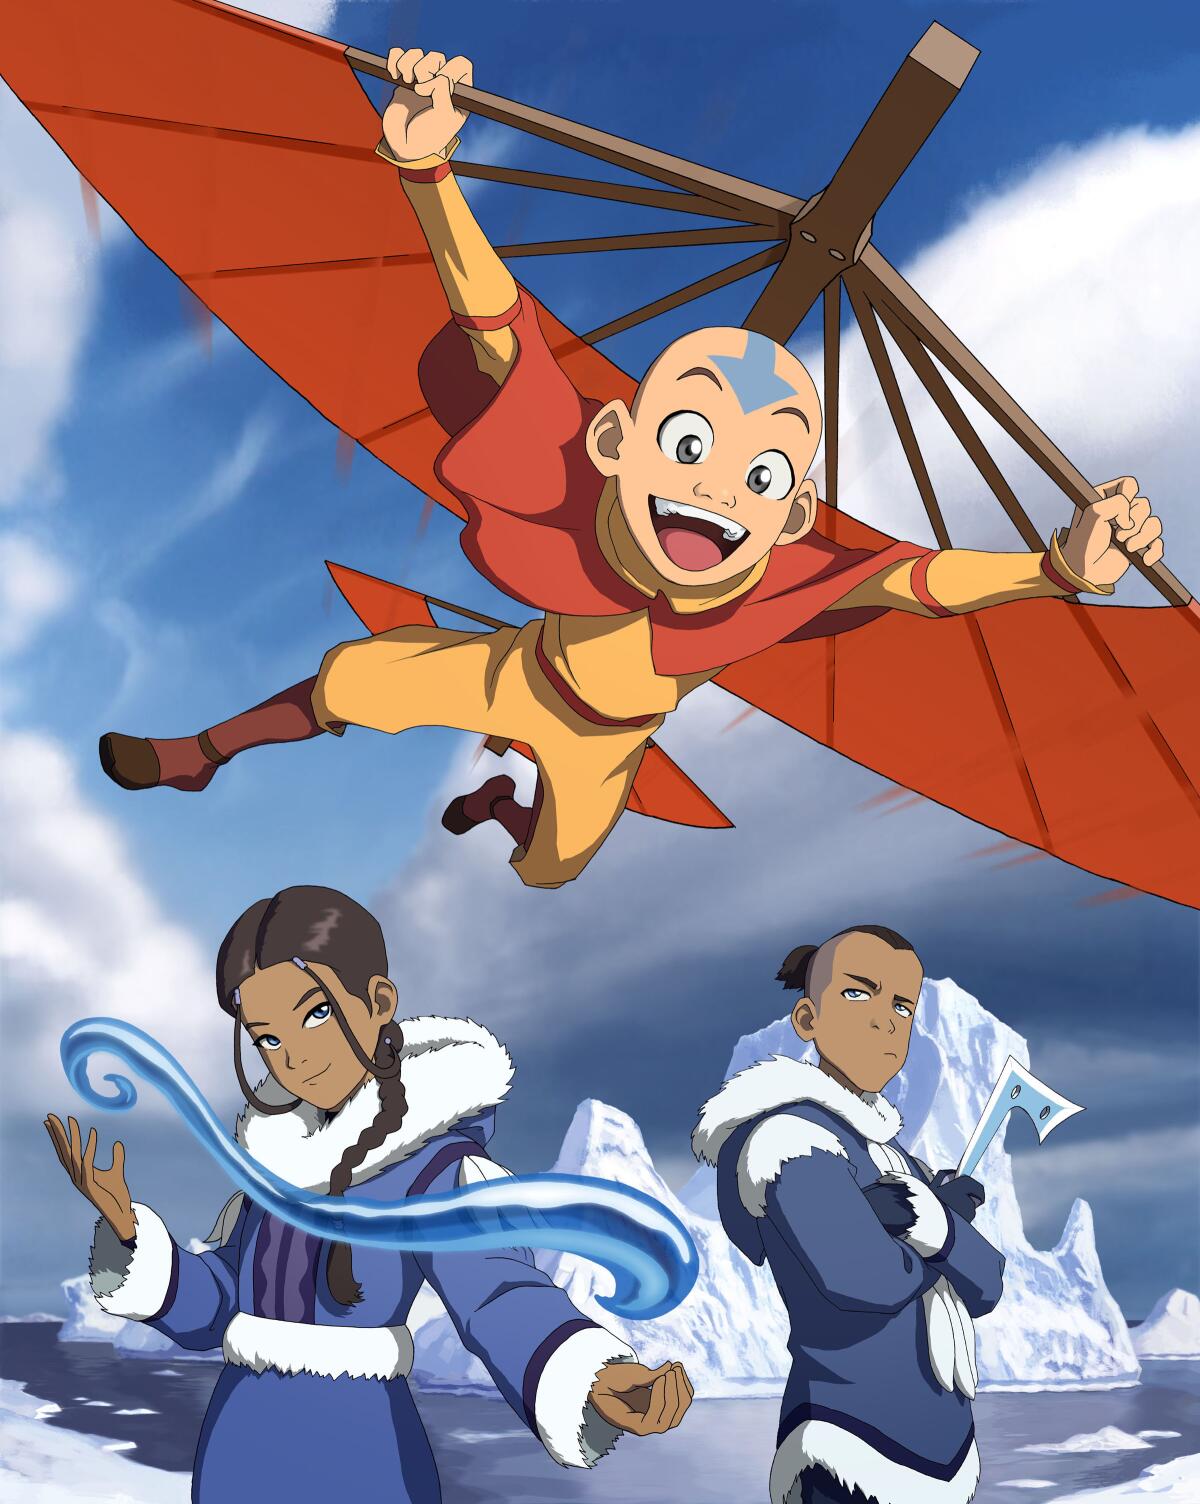 Aang, Katara and Sokka from "Avatar: The Last Airbender"